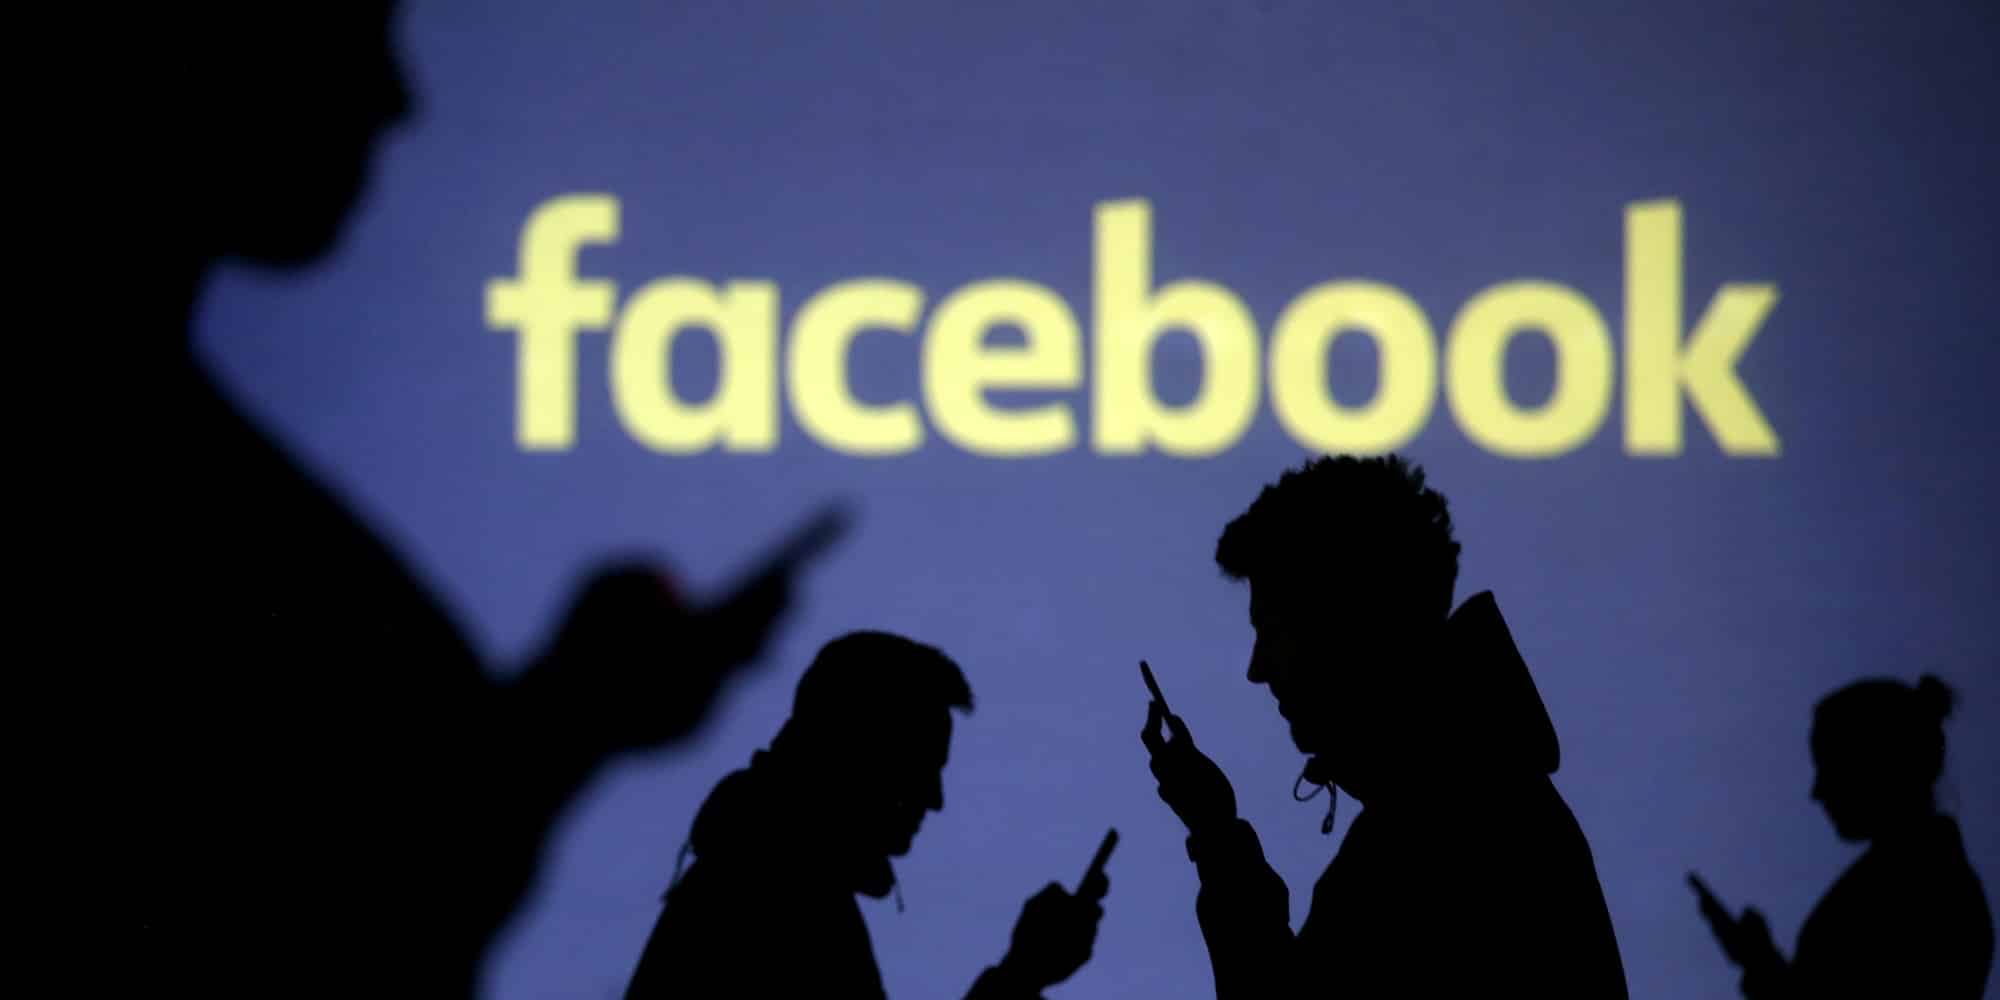 فيسبوك تفقد المزيد من المستخدمين في أوروبا مع استمرار نموها